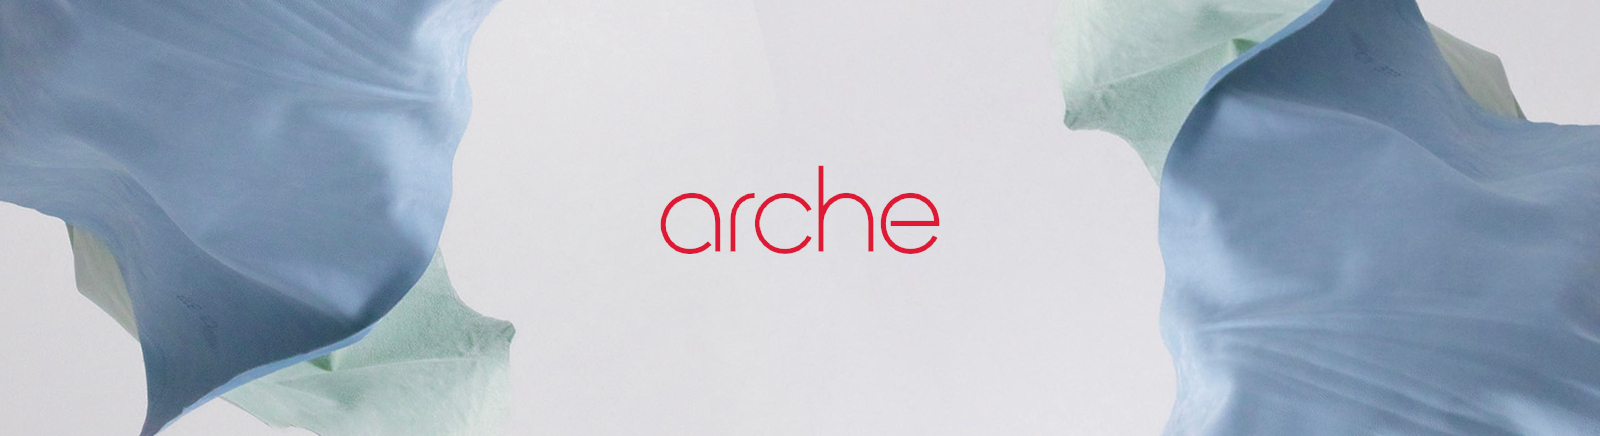 Arche Boots für Damen im Online-Shop von GISY kaufen